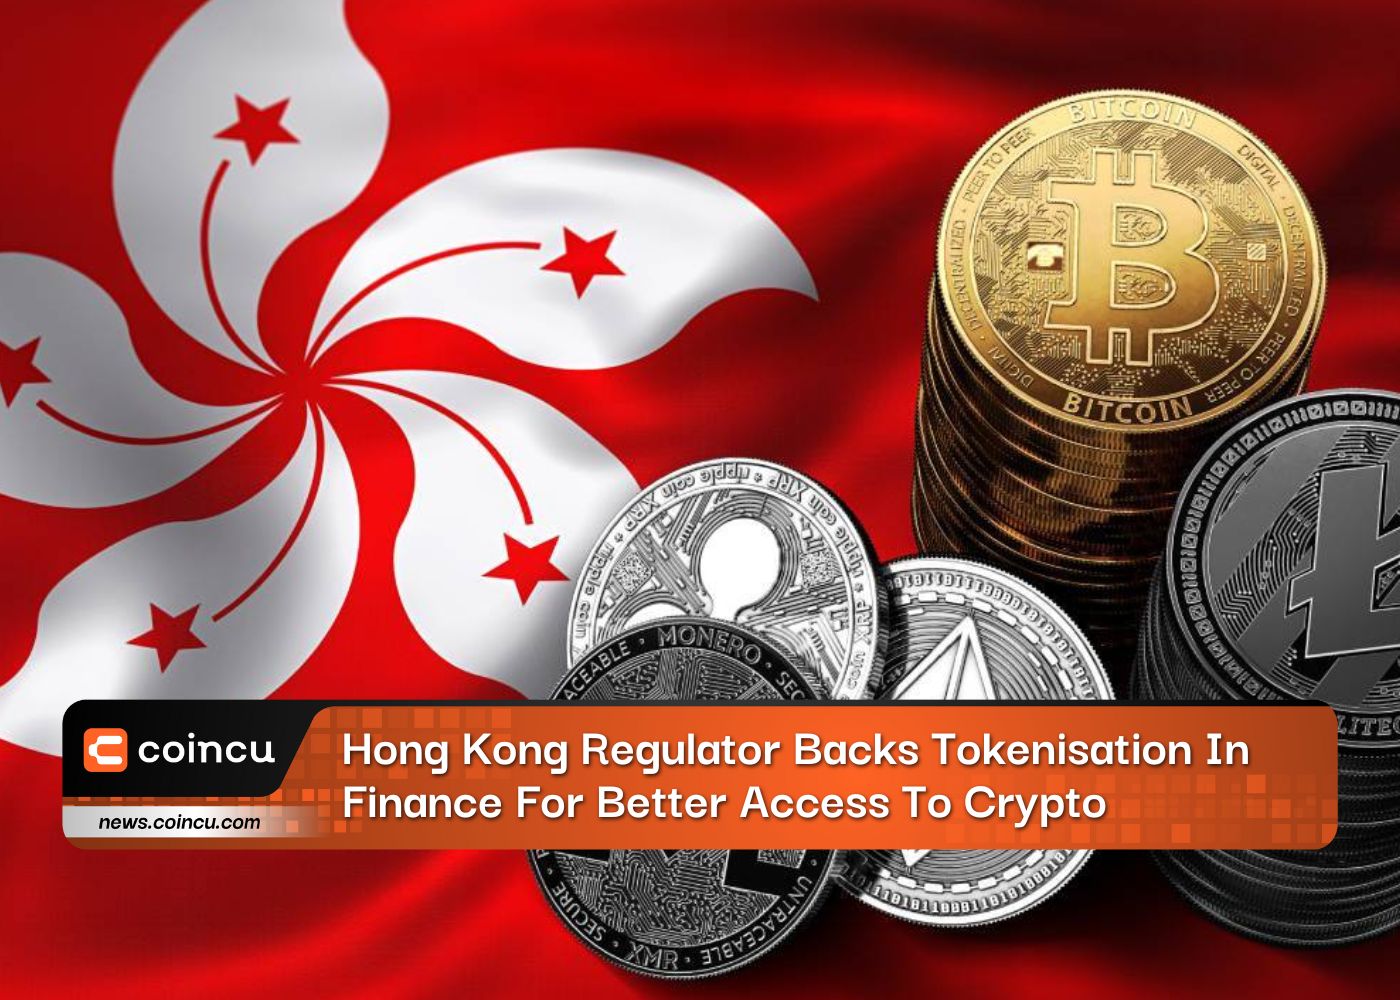 Hong Kong Regulator Backs Tokenisation In Finance For Better Access To Crypto